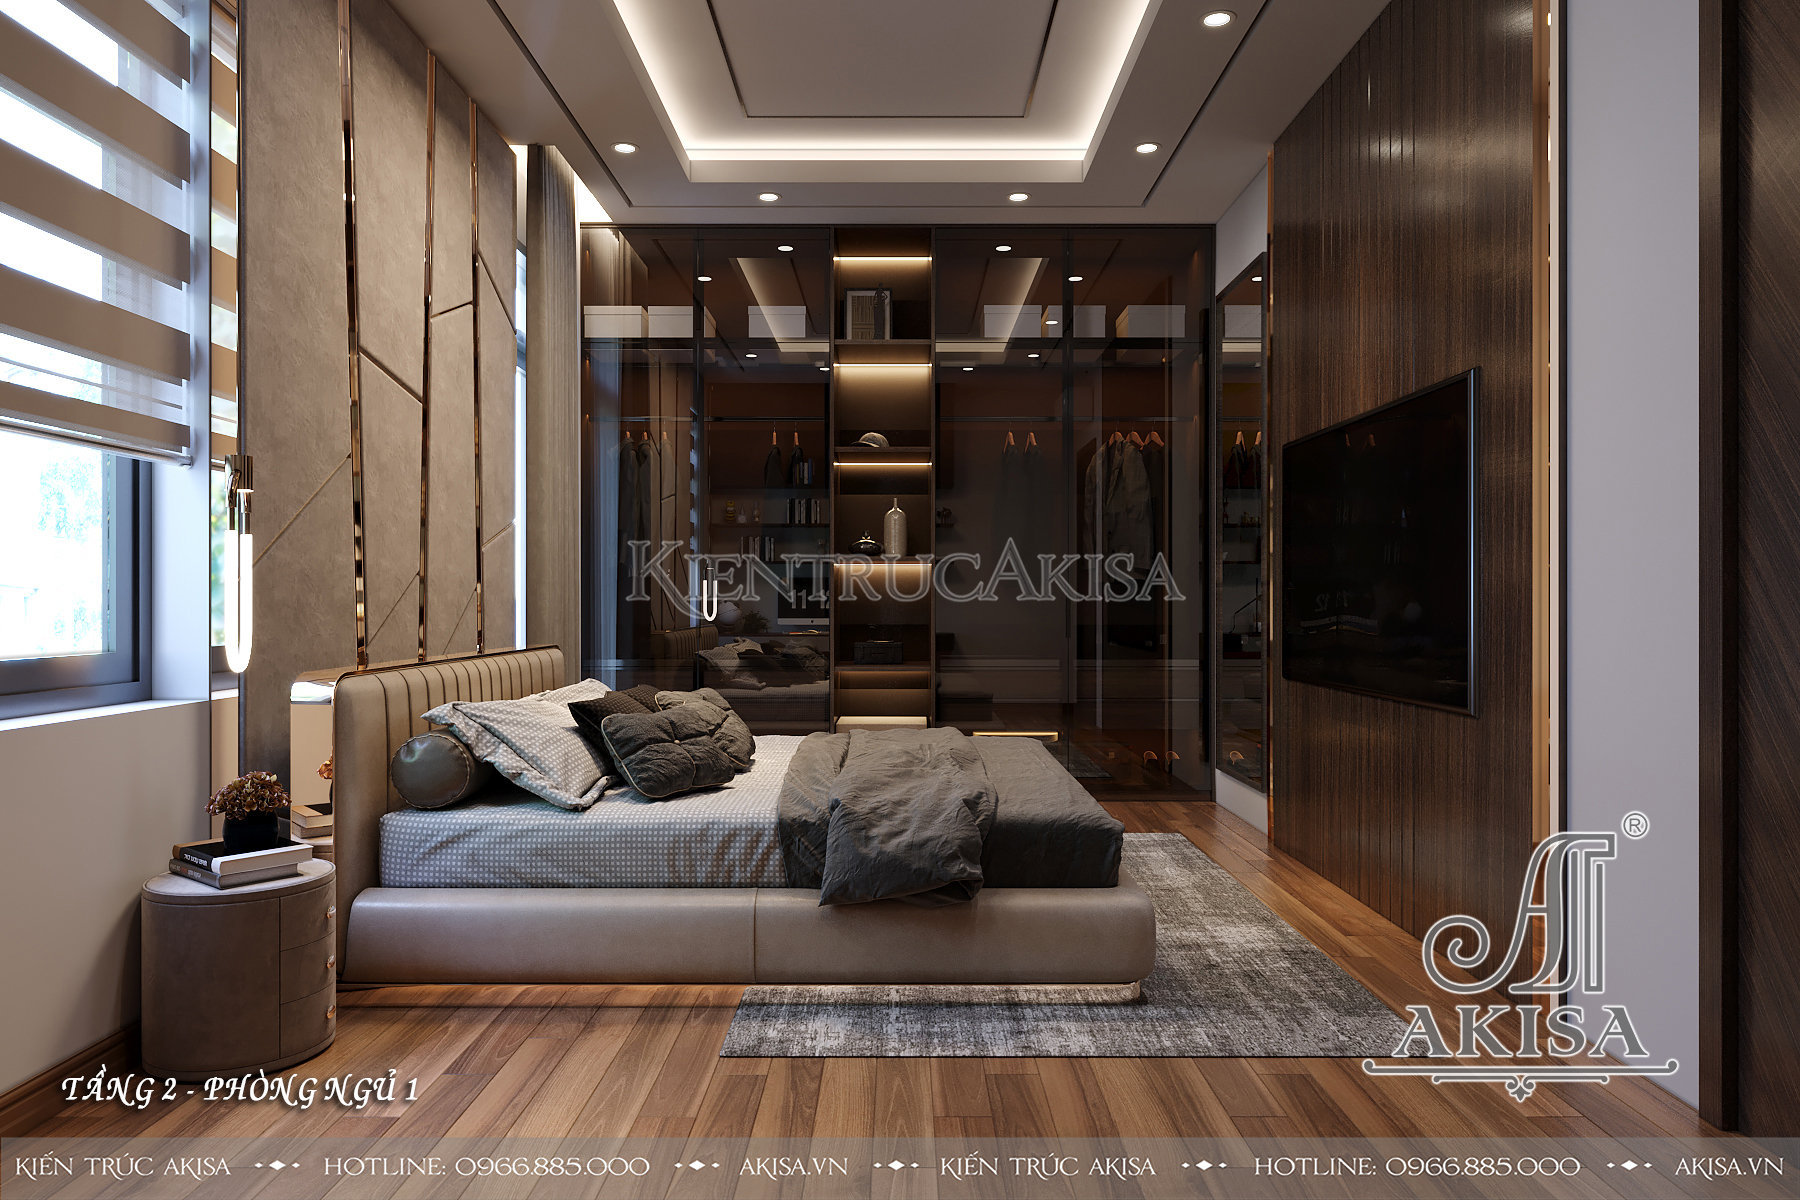 Mẫu nội thất gỗ công nghiệp đẹp hiện đại - Phòng ngủ 01